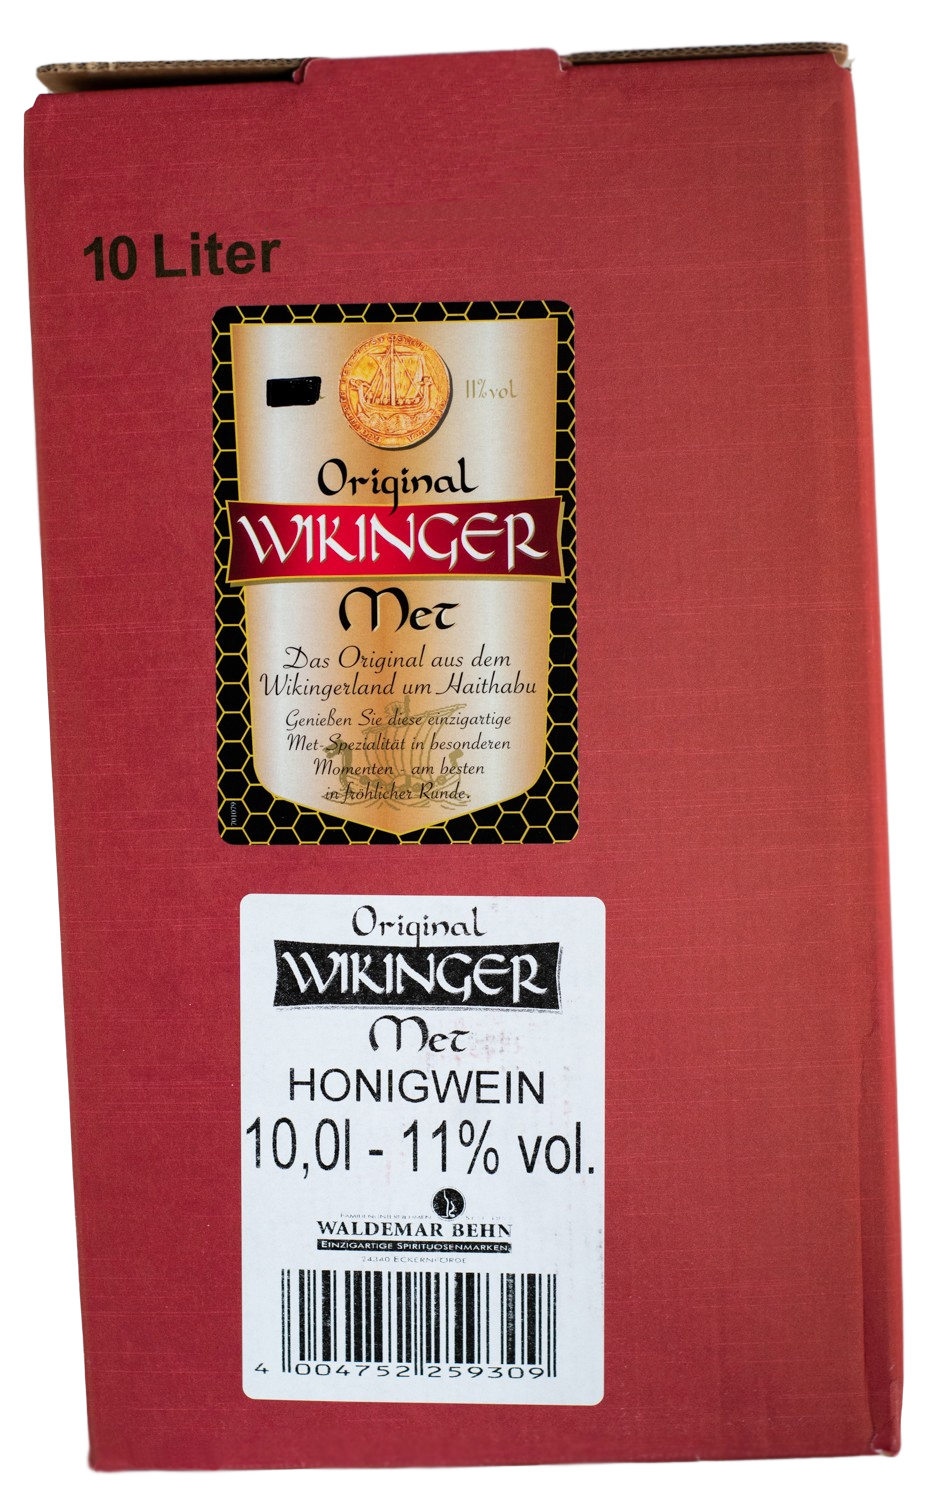 Original Wikinger Met (10L) kaufen günstig 10 Liter